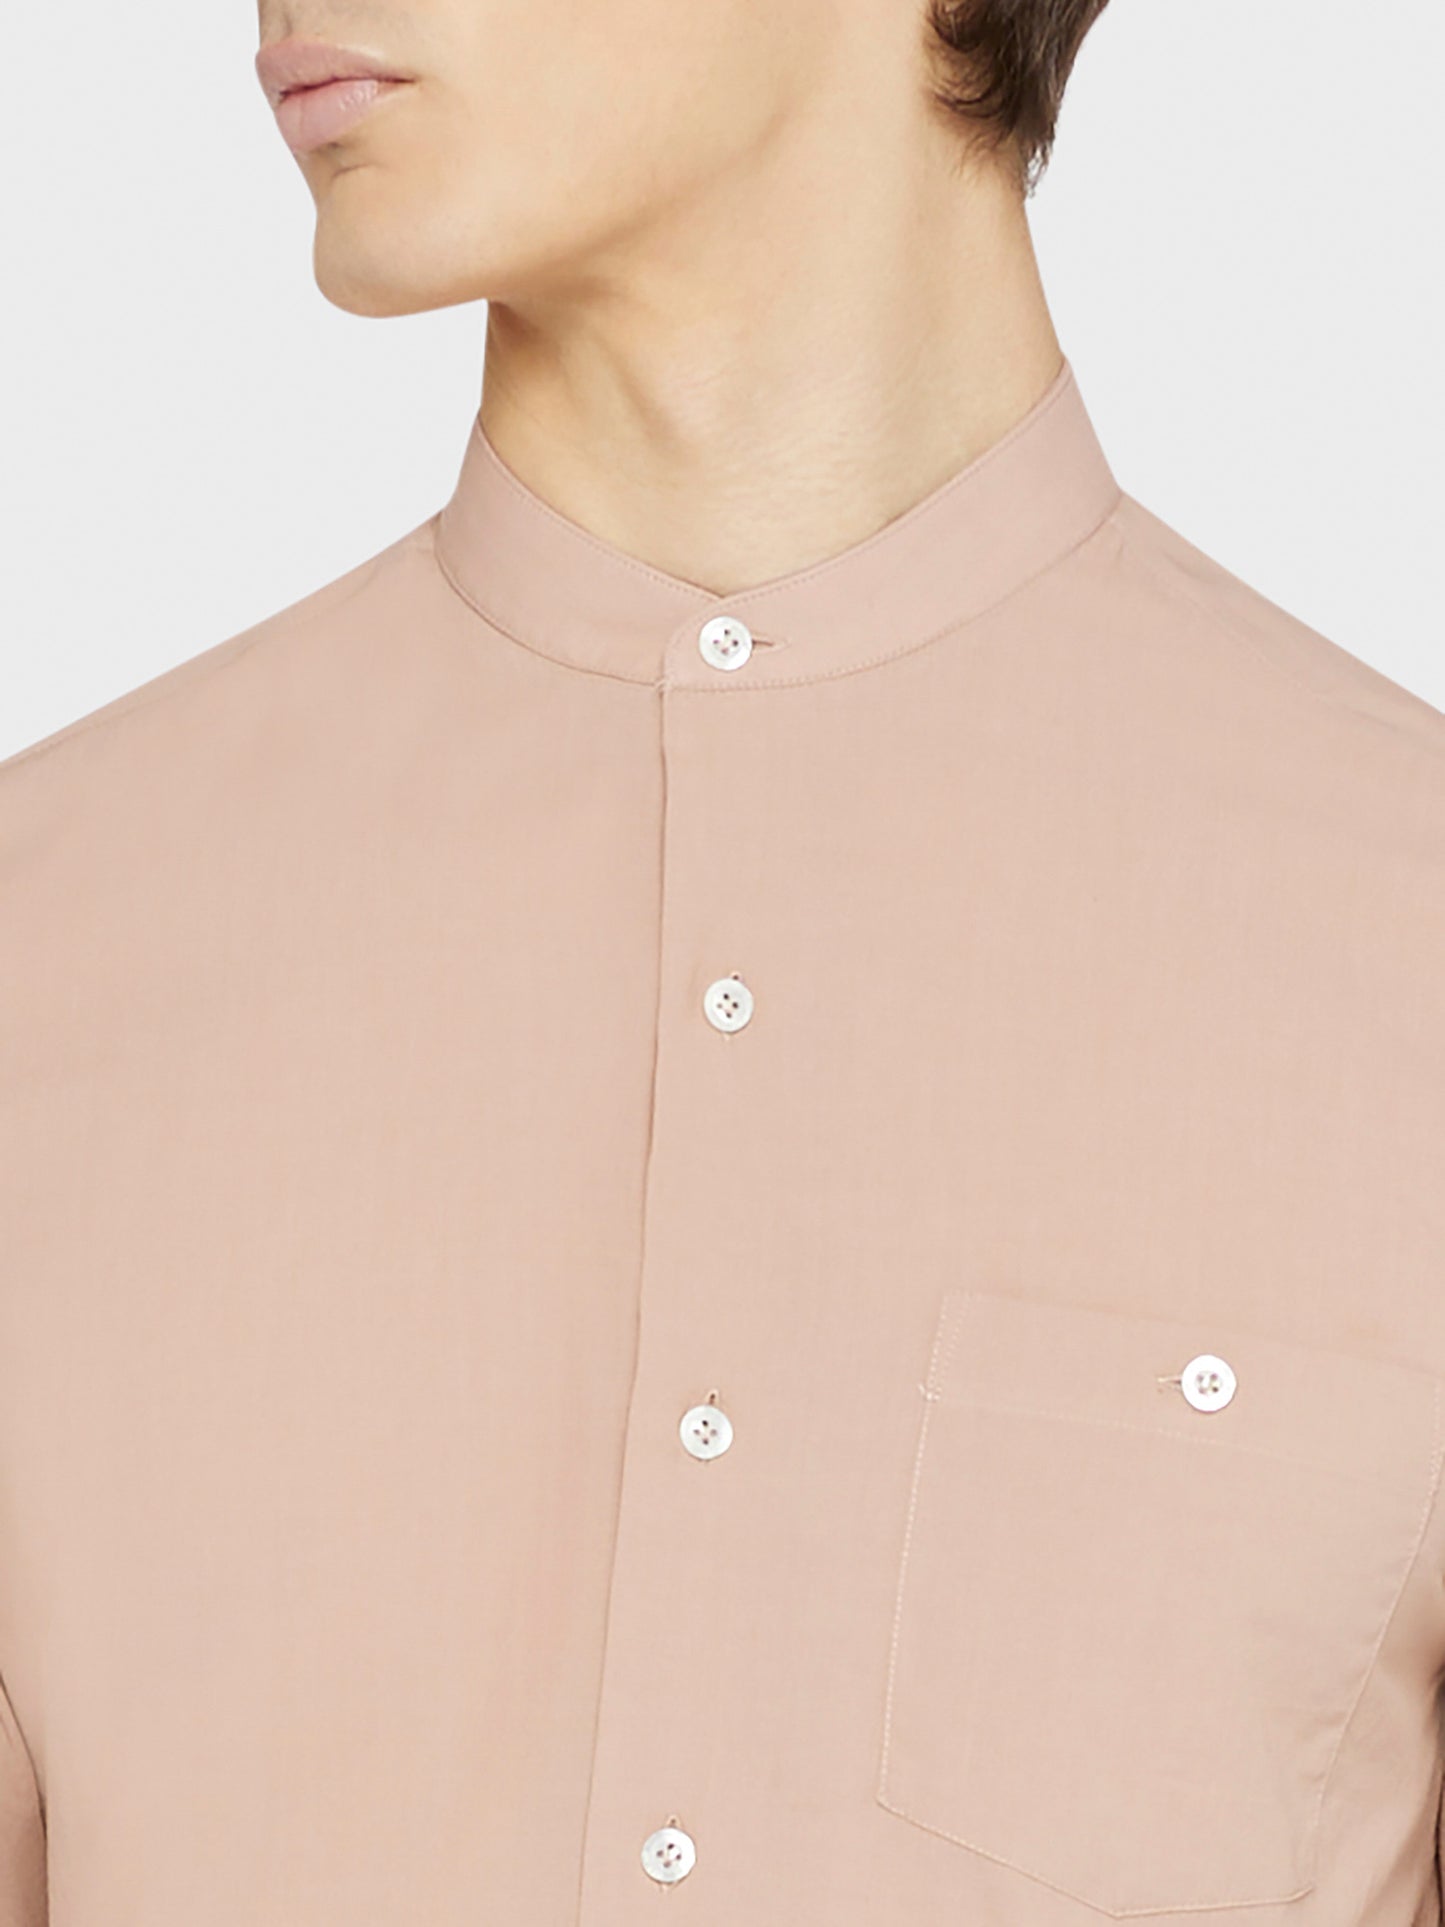 Caruso Menswear Abbigliamento Uomo Camicia Coreana in cotone rosa antico dettaglio